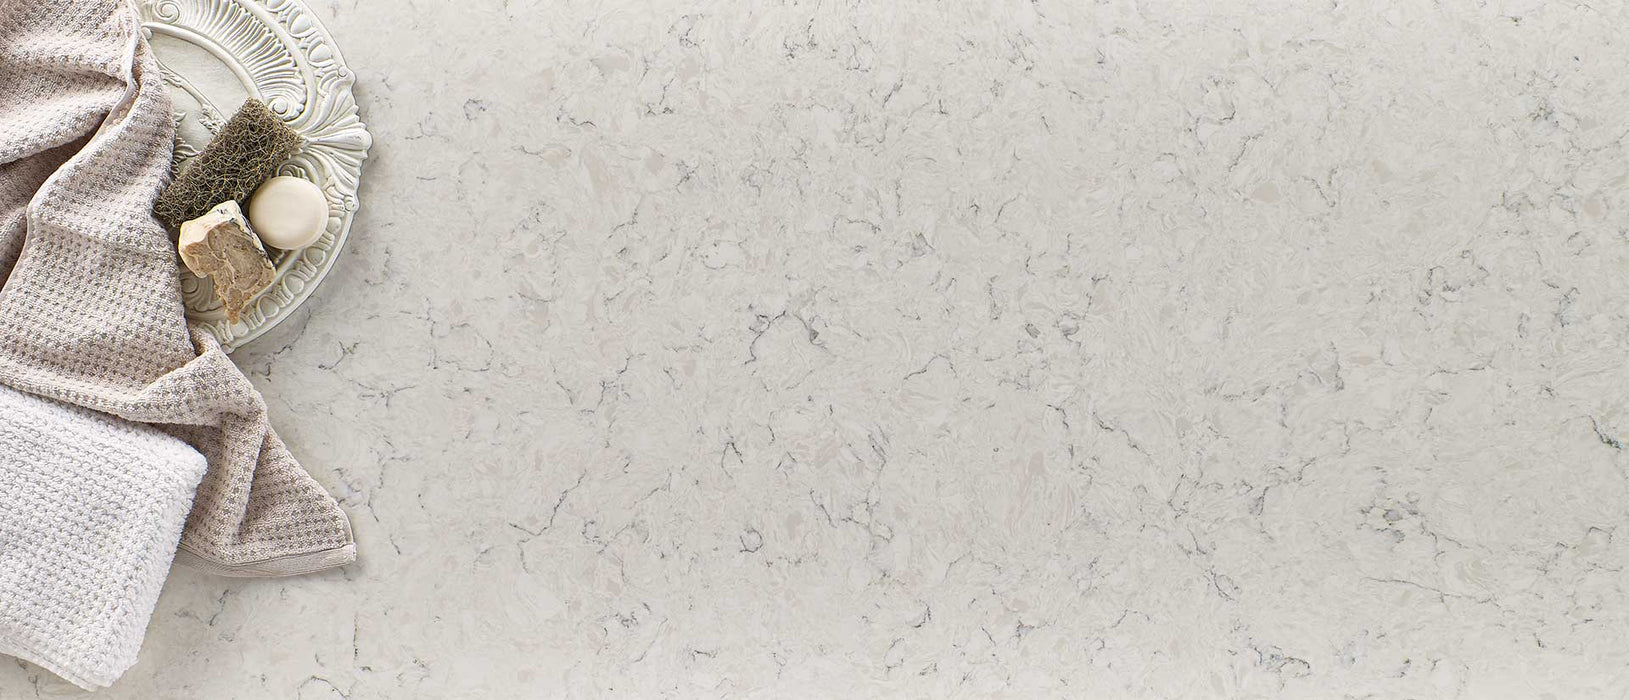 Carrara Mist quartz countertop moment